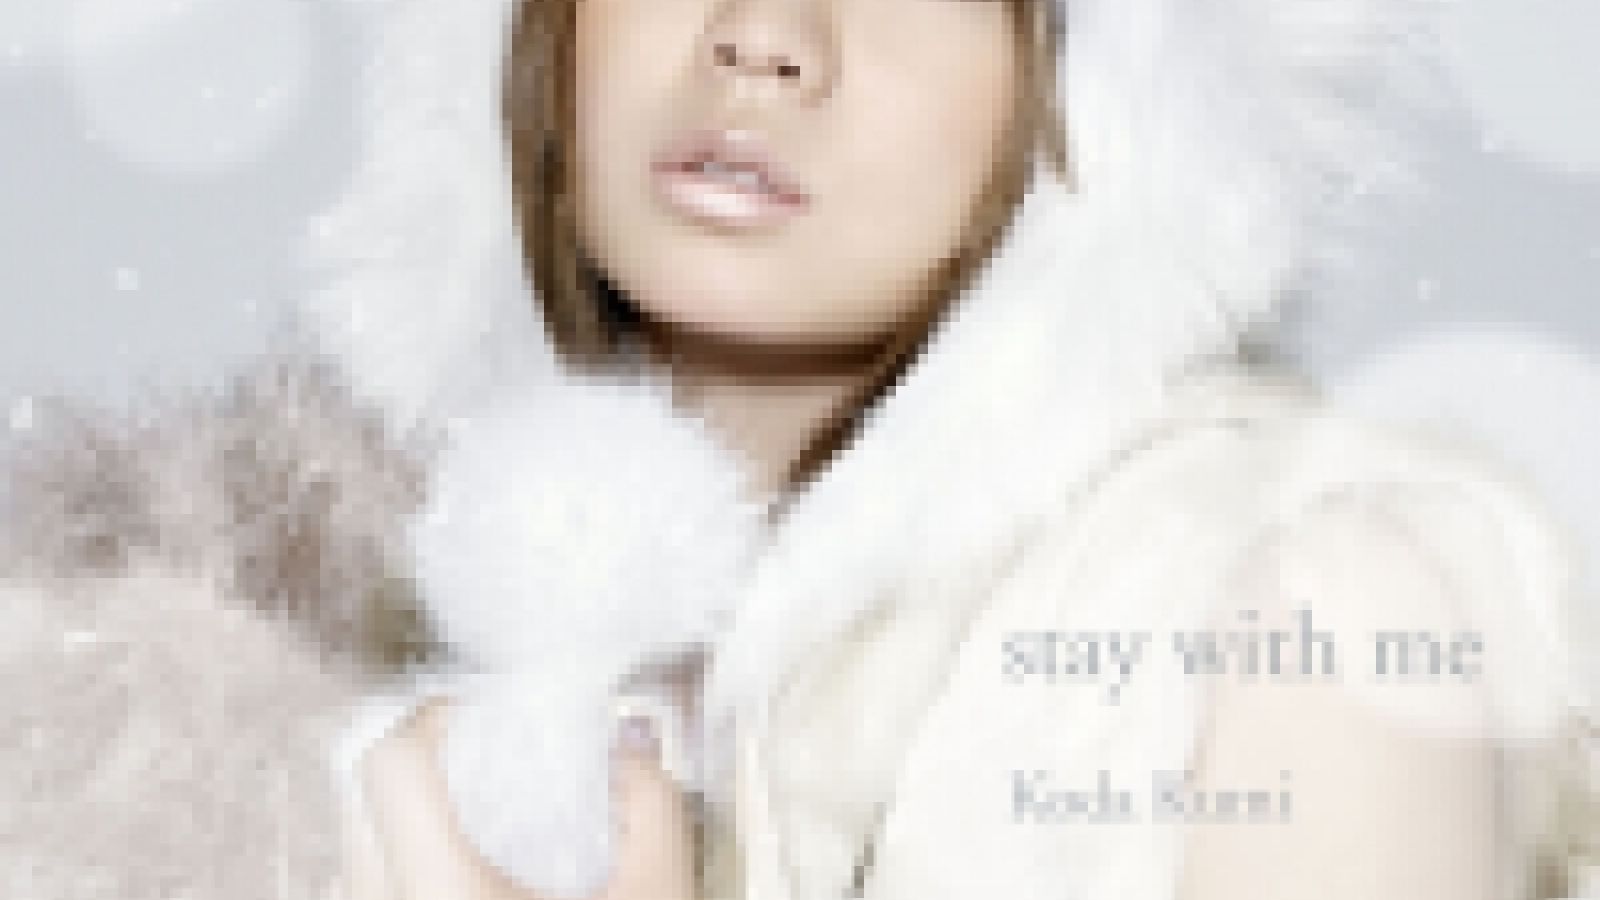 Koda Kumi - stay with me © JaME